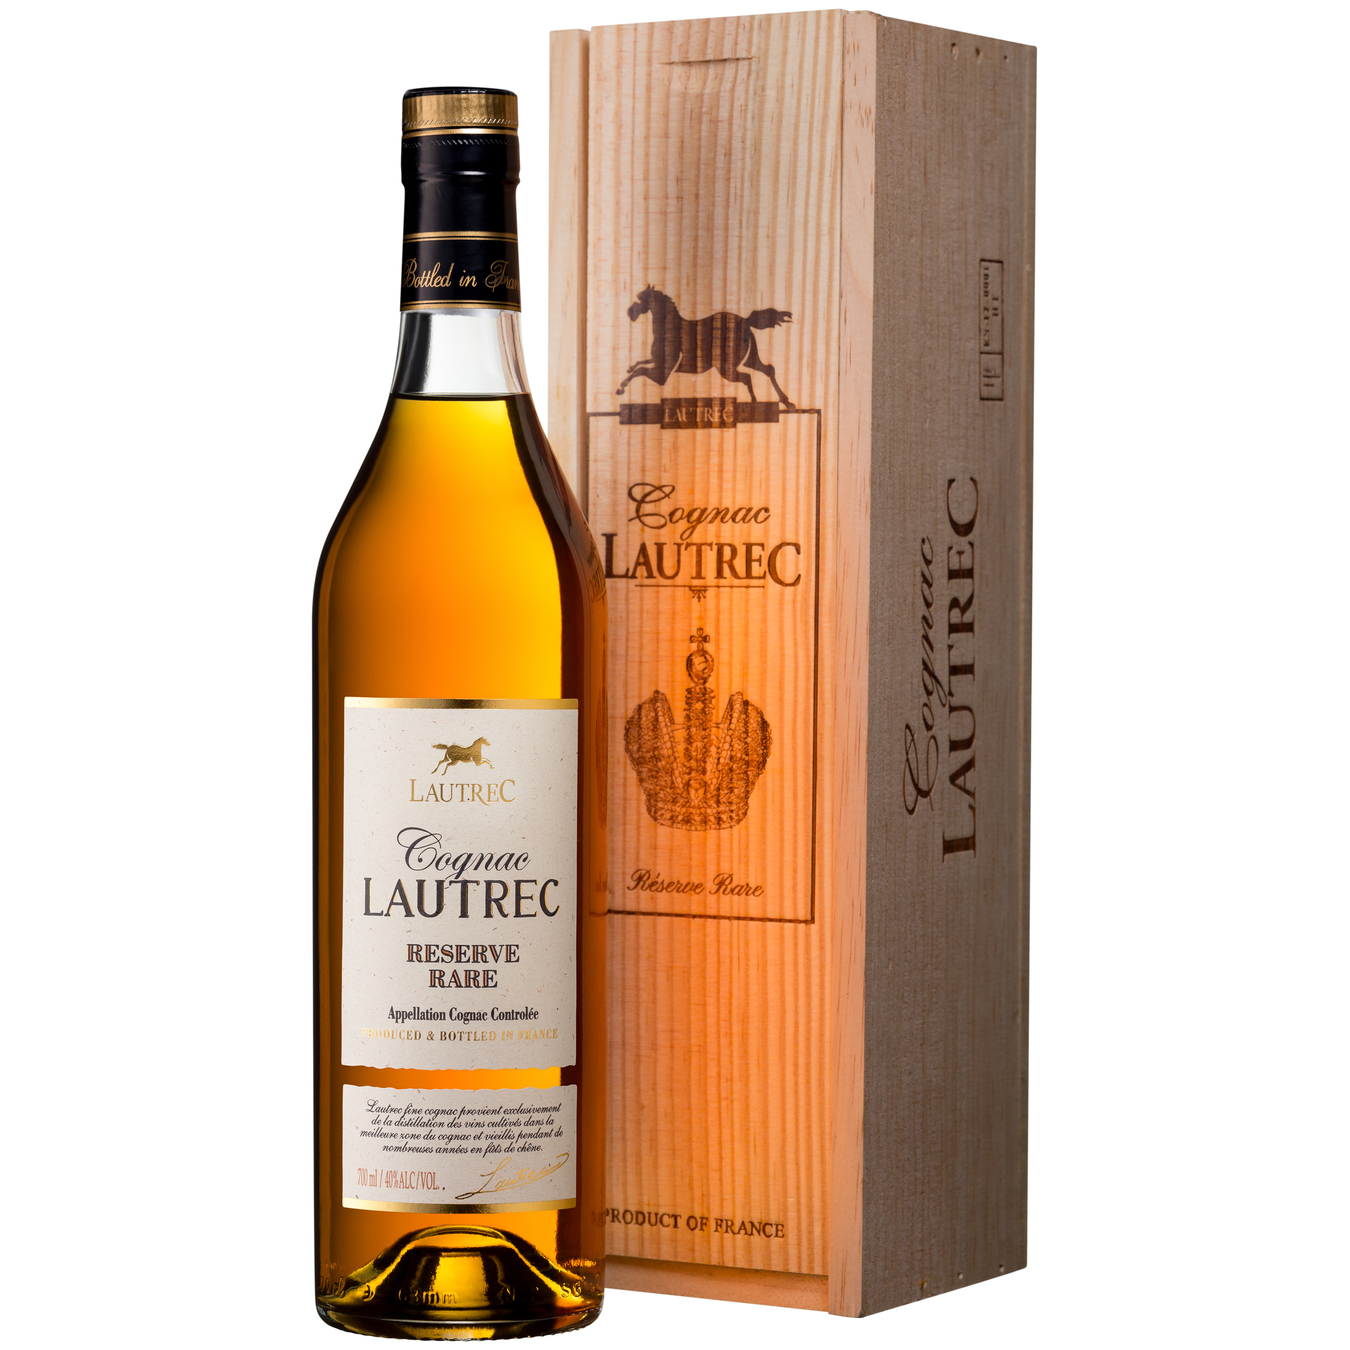 Cognac Lautrec Reserve Rare VSOP 40% 0.7 l in a box